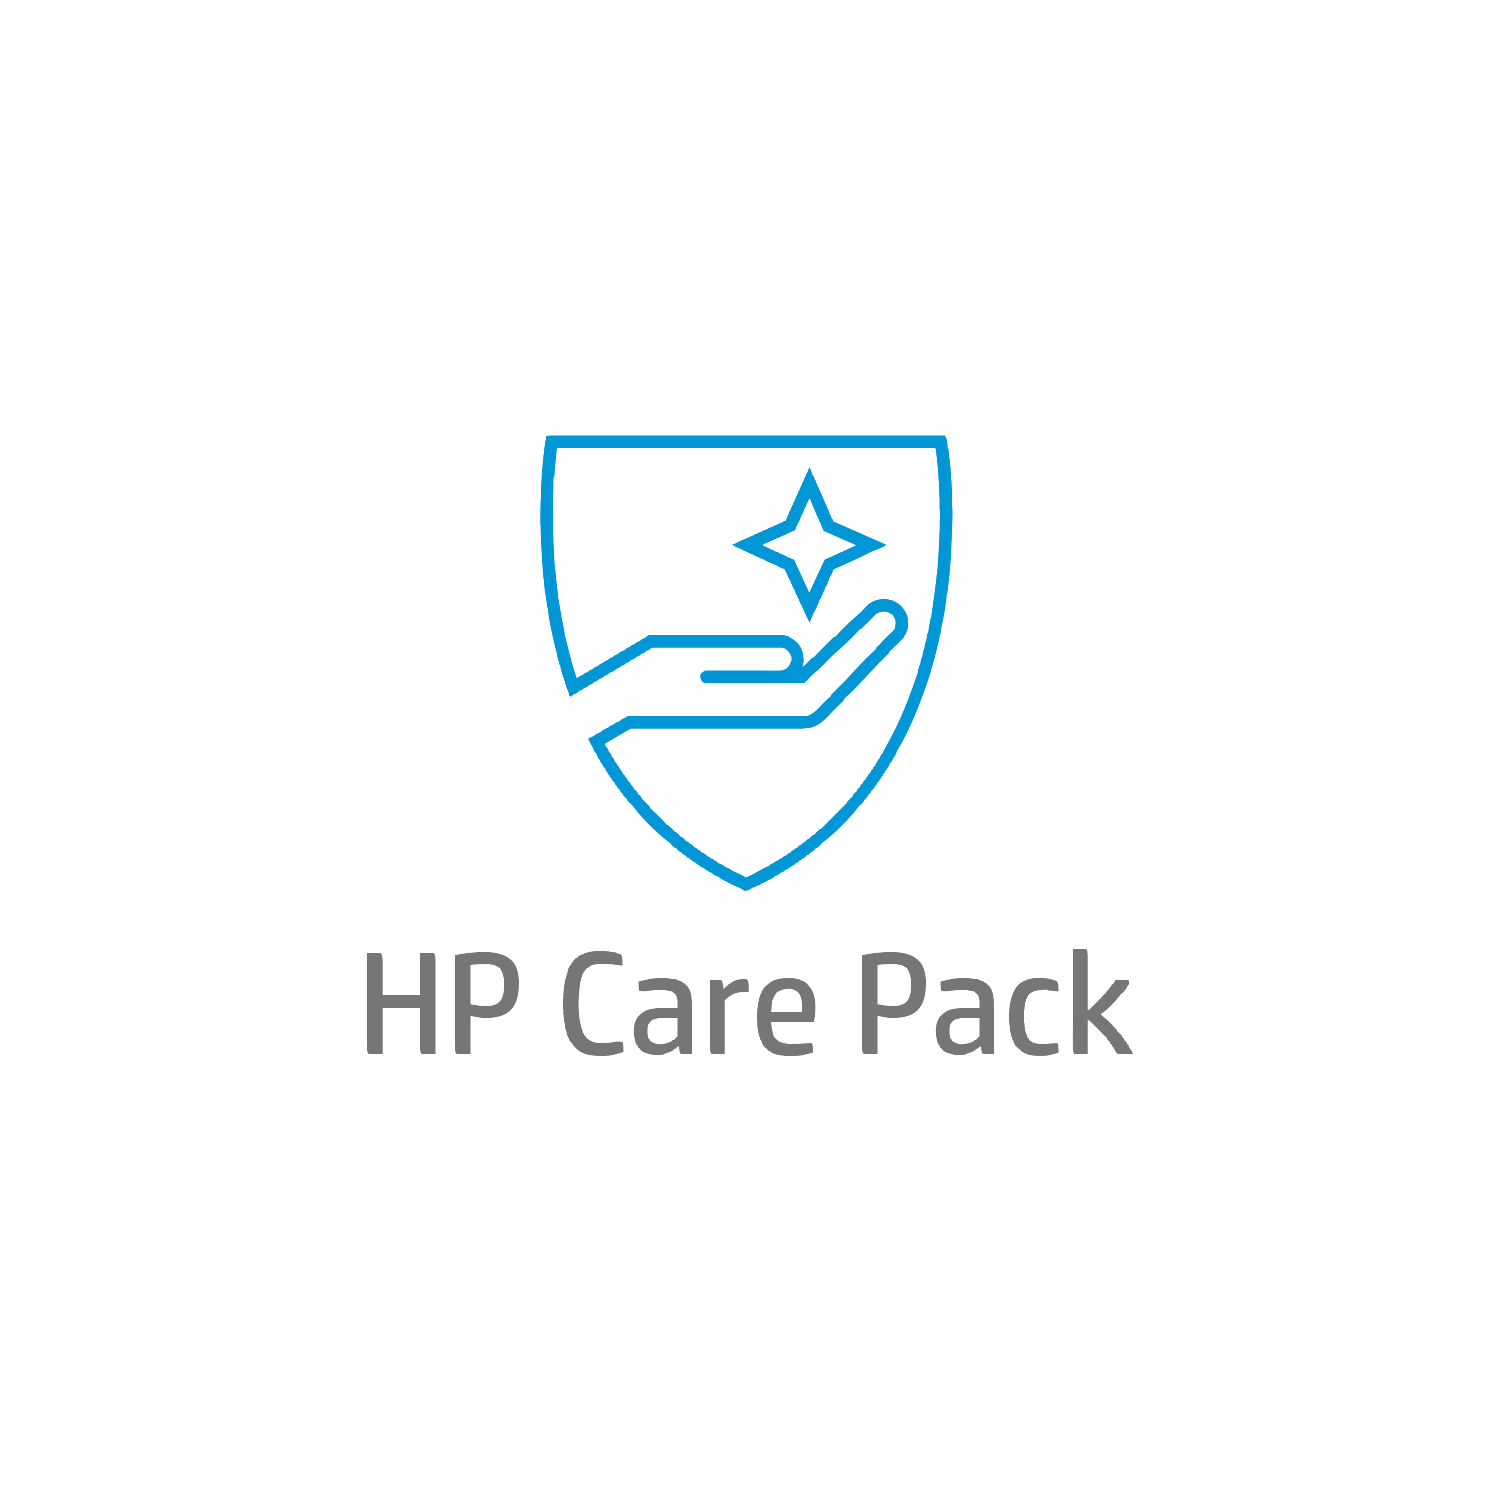 Bild von HP Active Care Lösungs-Support vor Ort am nächsten Arbeitstag für Desktops - 5 Jahre - Active Care - Remote und vor Ort - Unter Garantie - Standardarbeitstage - 9 Stunden - 5 Jahre - Reaktion am nächsten Arbeitstag